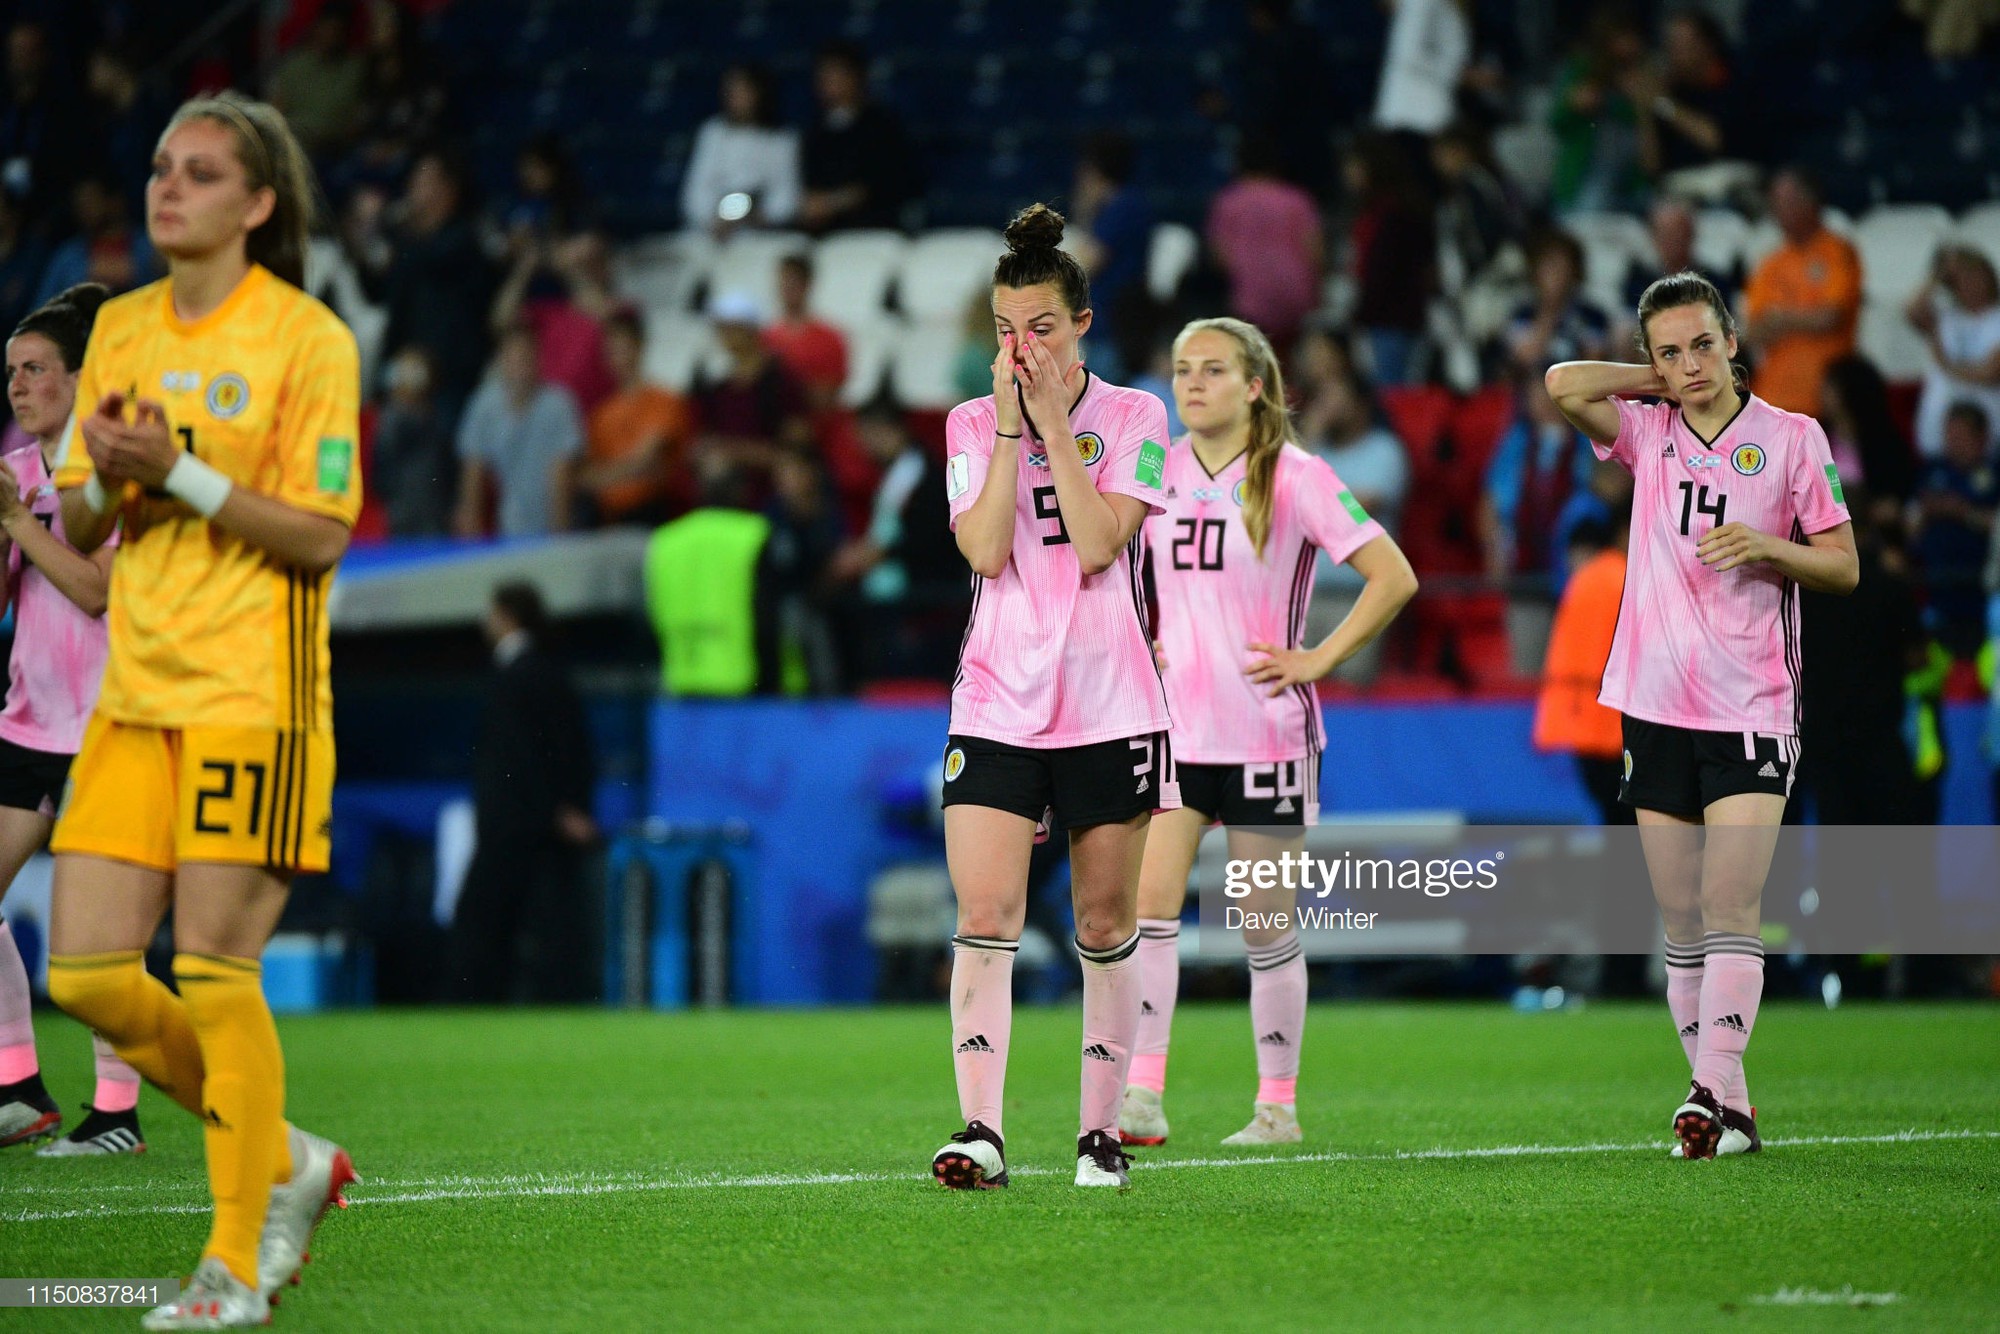 Dẫn trước 3 bàn nhưng bị gỡ hòa trong vỏn vẹn 20 phút, tuyển nữ Scotland bật khóc nức nở khi bị loại khỏi World Cup nữ 2019 - Ảnh 3.